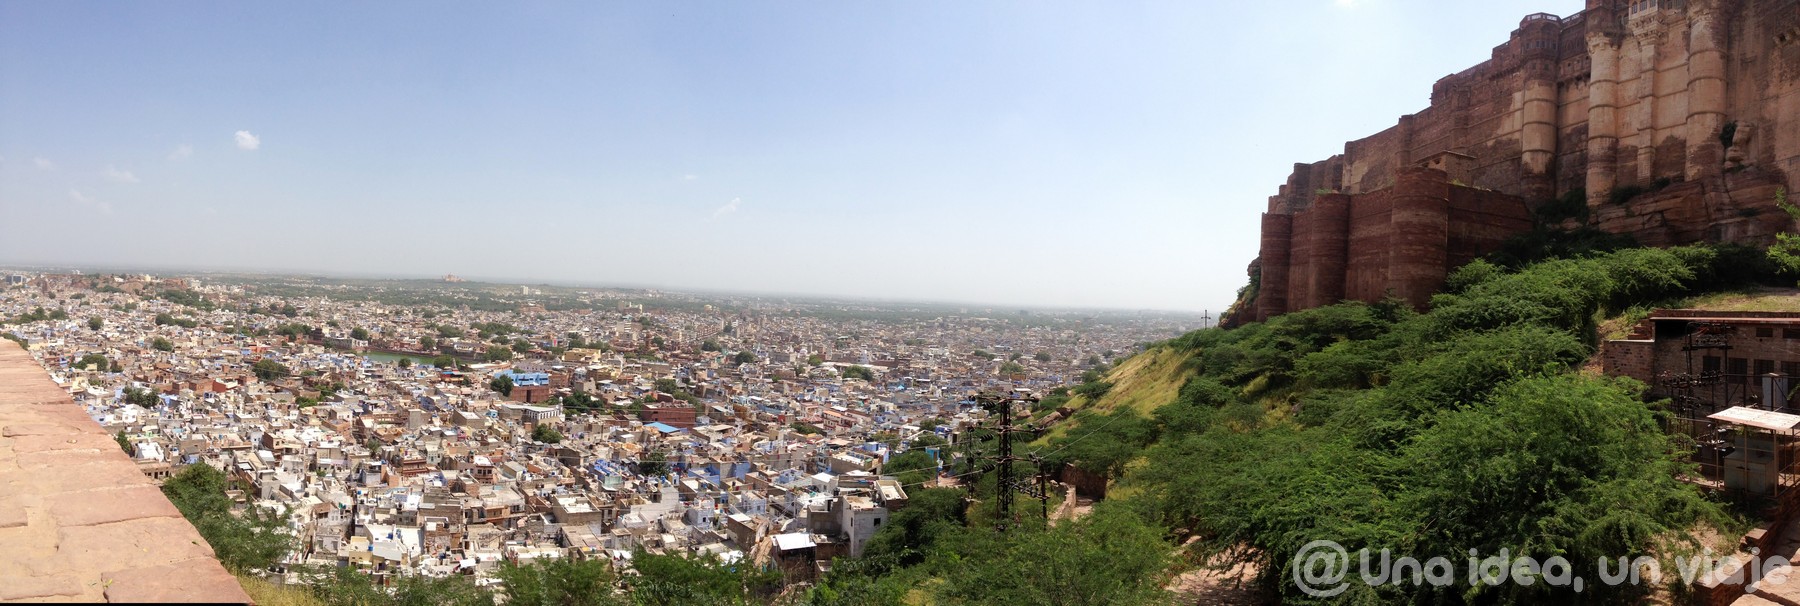 india-rajastan-15-dias-jodhpur-visitar-unaideaunviaje-01